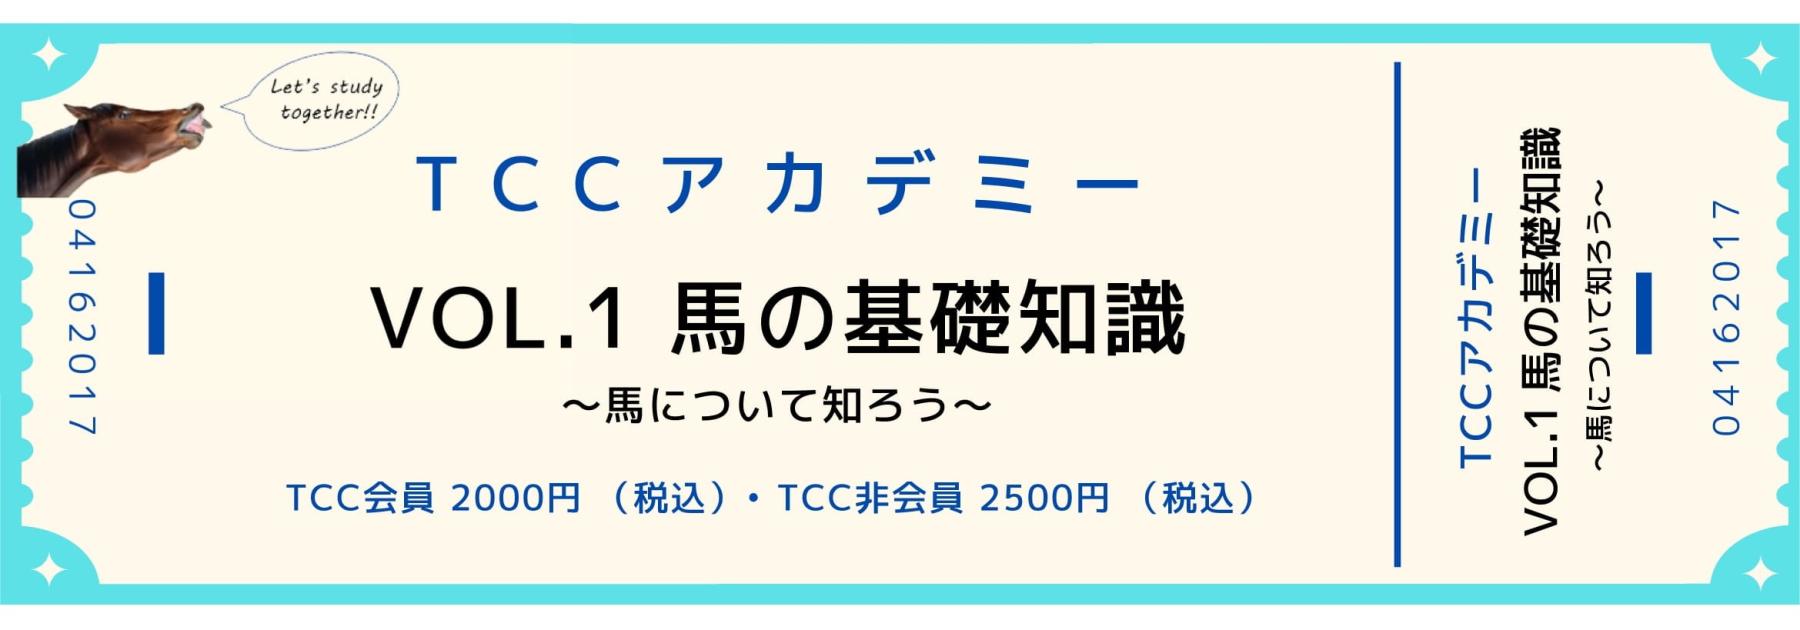 TCCアカデミー Vol.1 チケット発売! 【視聴URL送付しました】